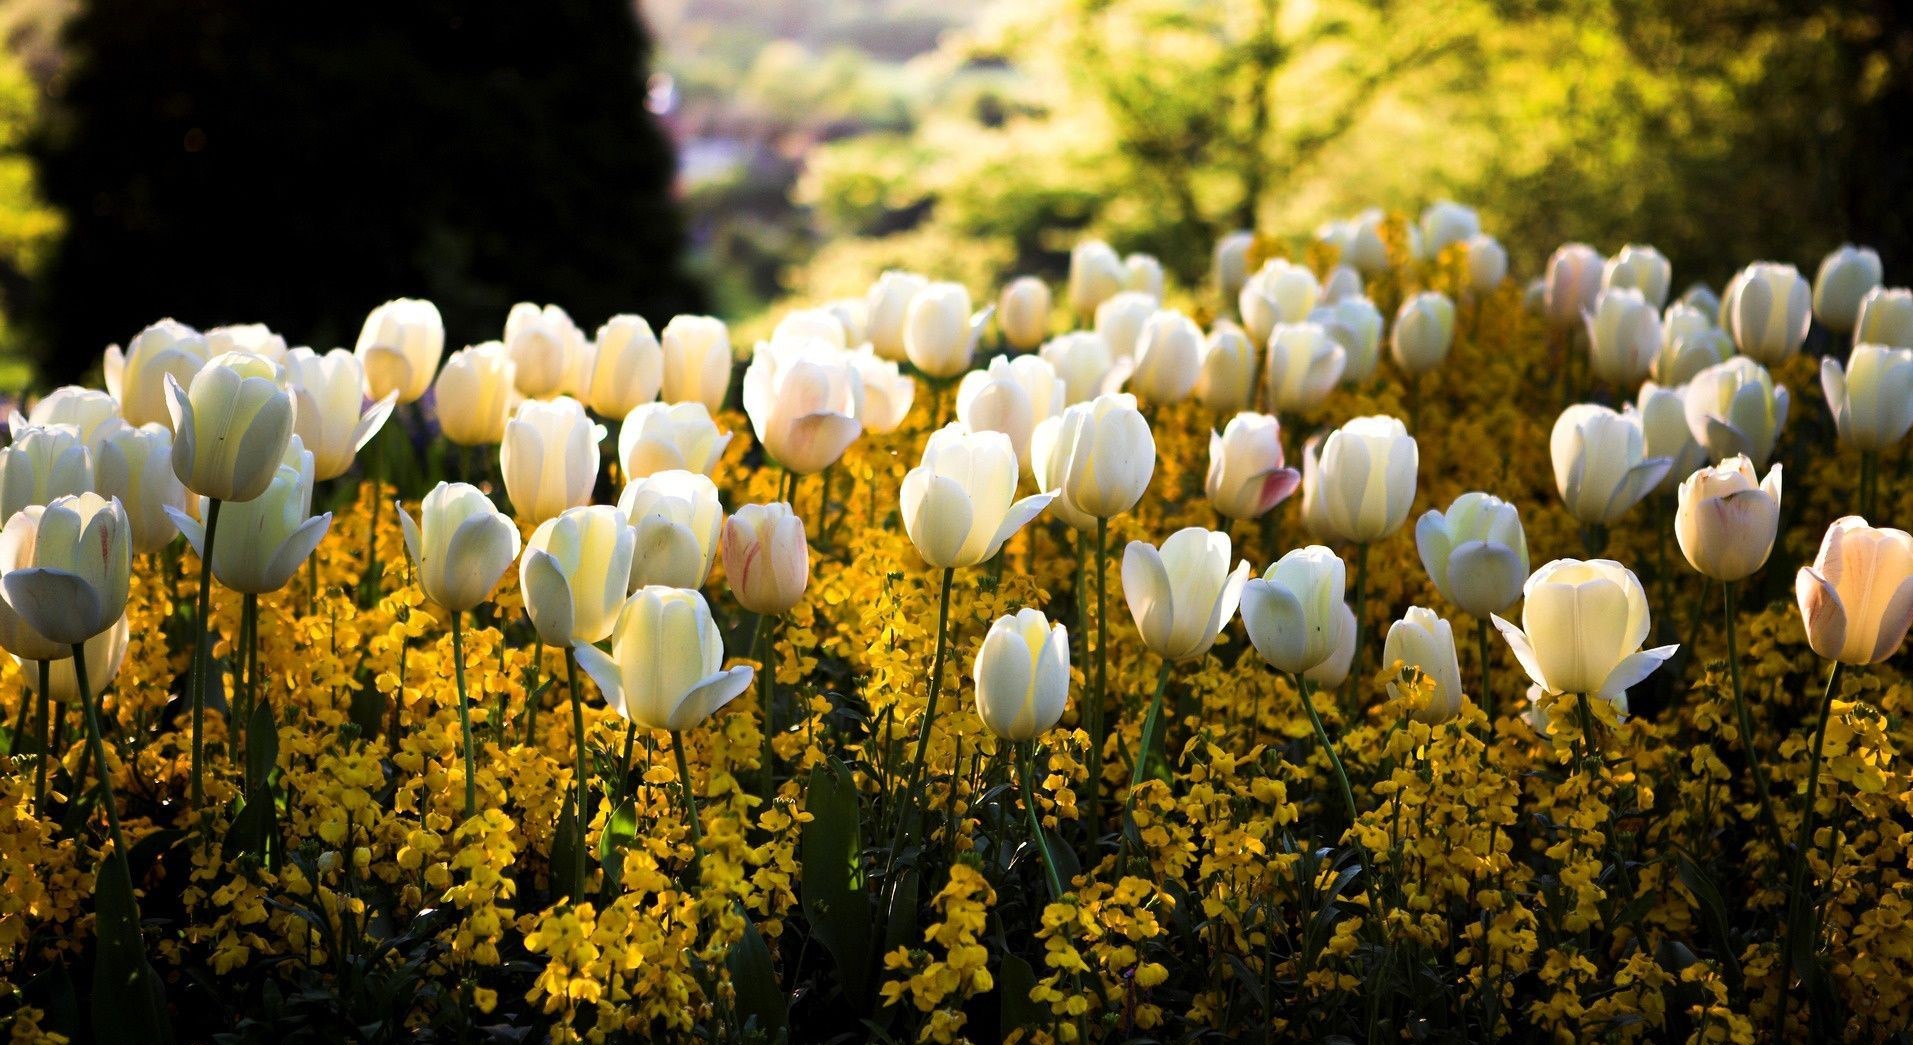 Hình nền hoa tulip: Tổng hợp các mẫu hình đẹp và nên thơ nhất